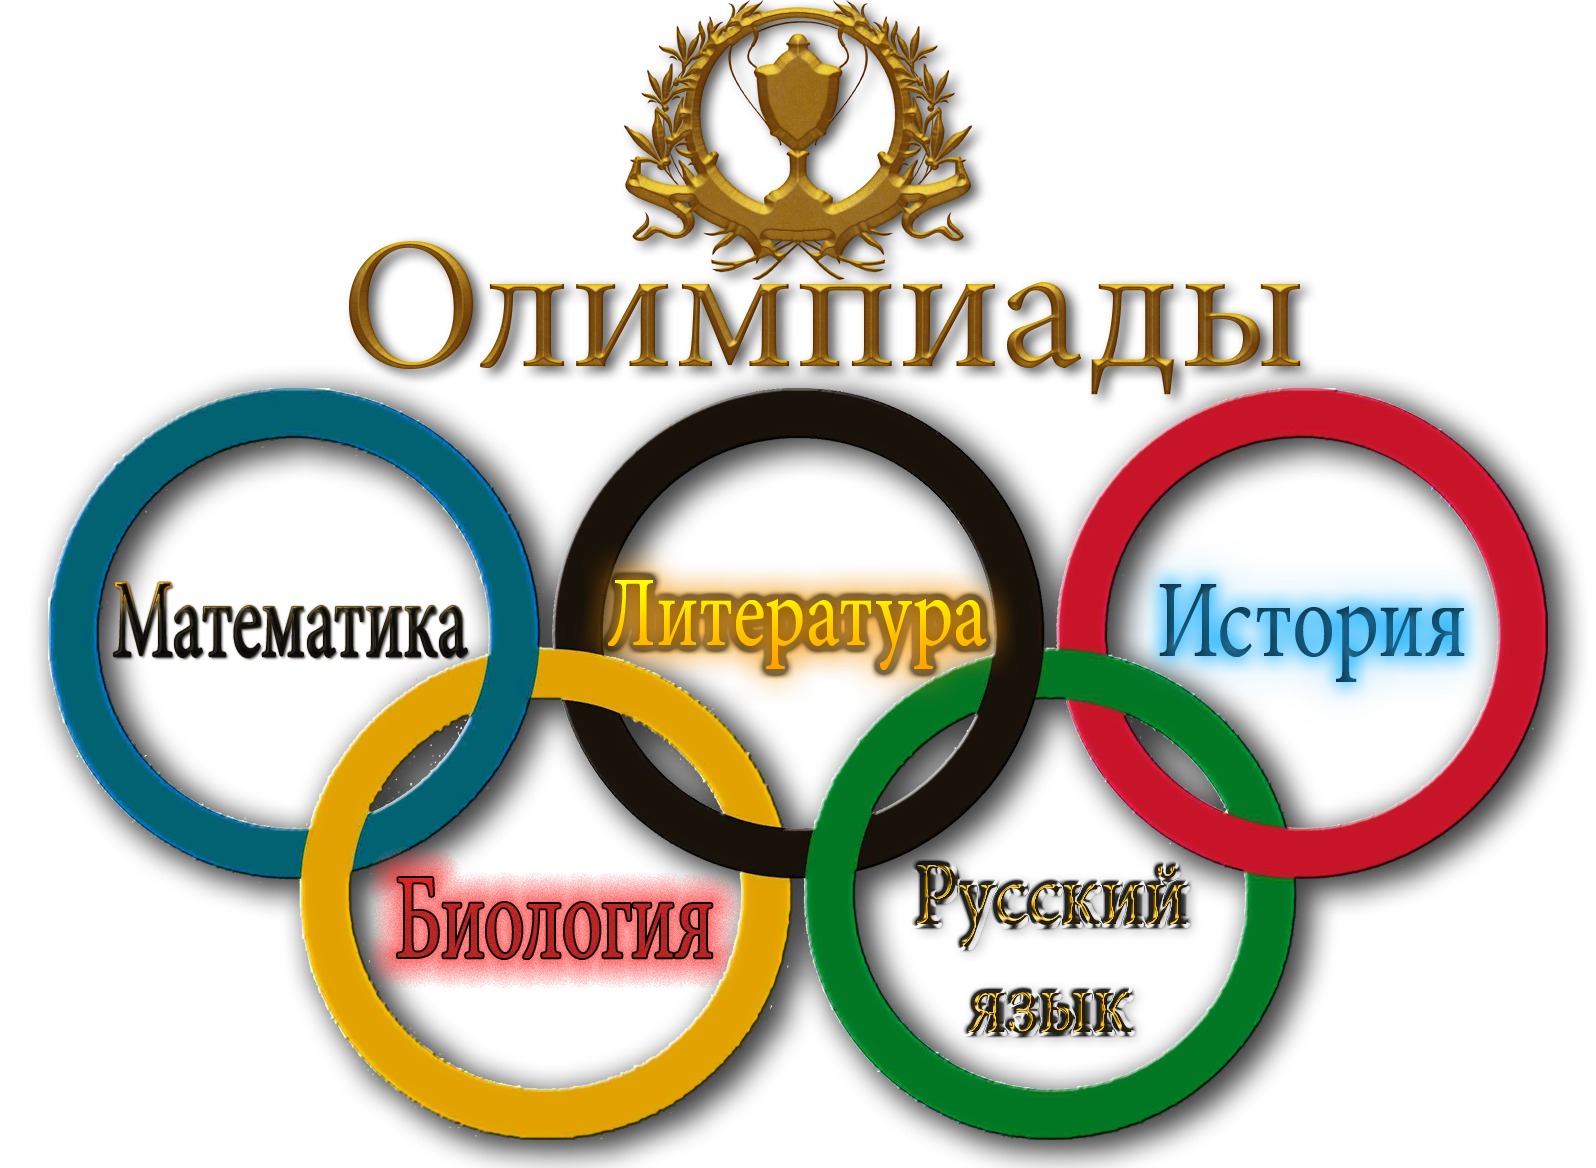 Олимпиады